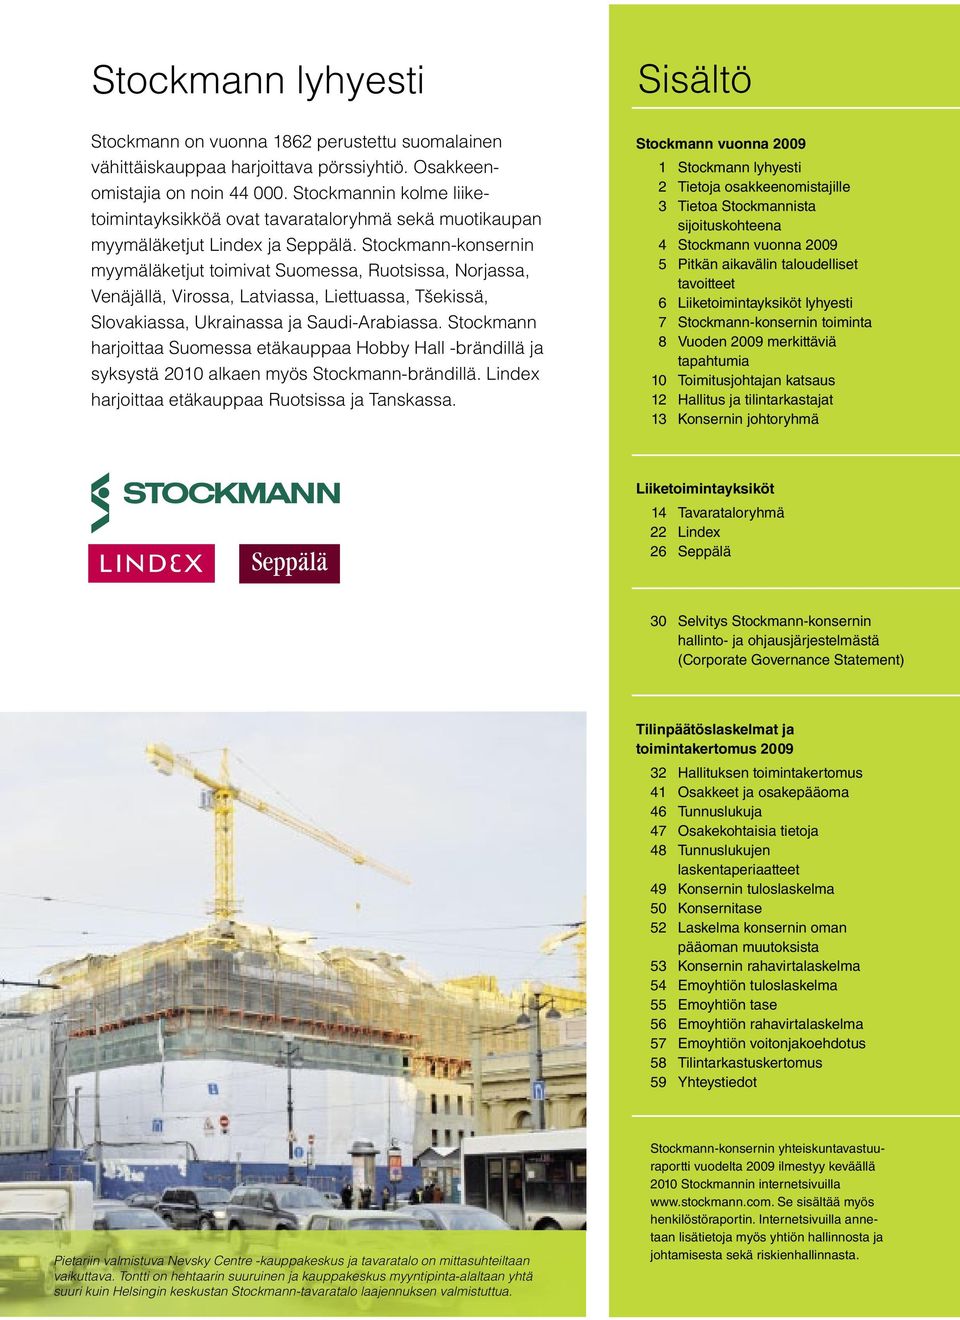 Stockmann-konsernin myymäläketjut toimivat Suomessa, Ruotsissa, Norjassa, Venäjällä, Virossa, Latviassa, Liettuassa, Tšekissä, Slovakiassa, Ukrainassa ja Saudi-Arabiassa.